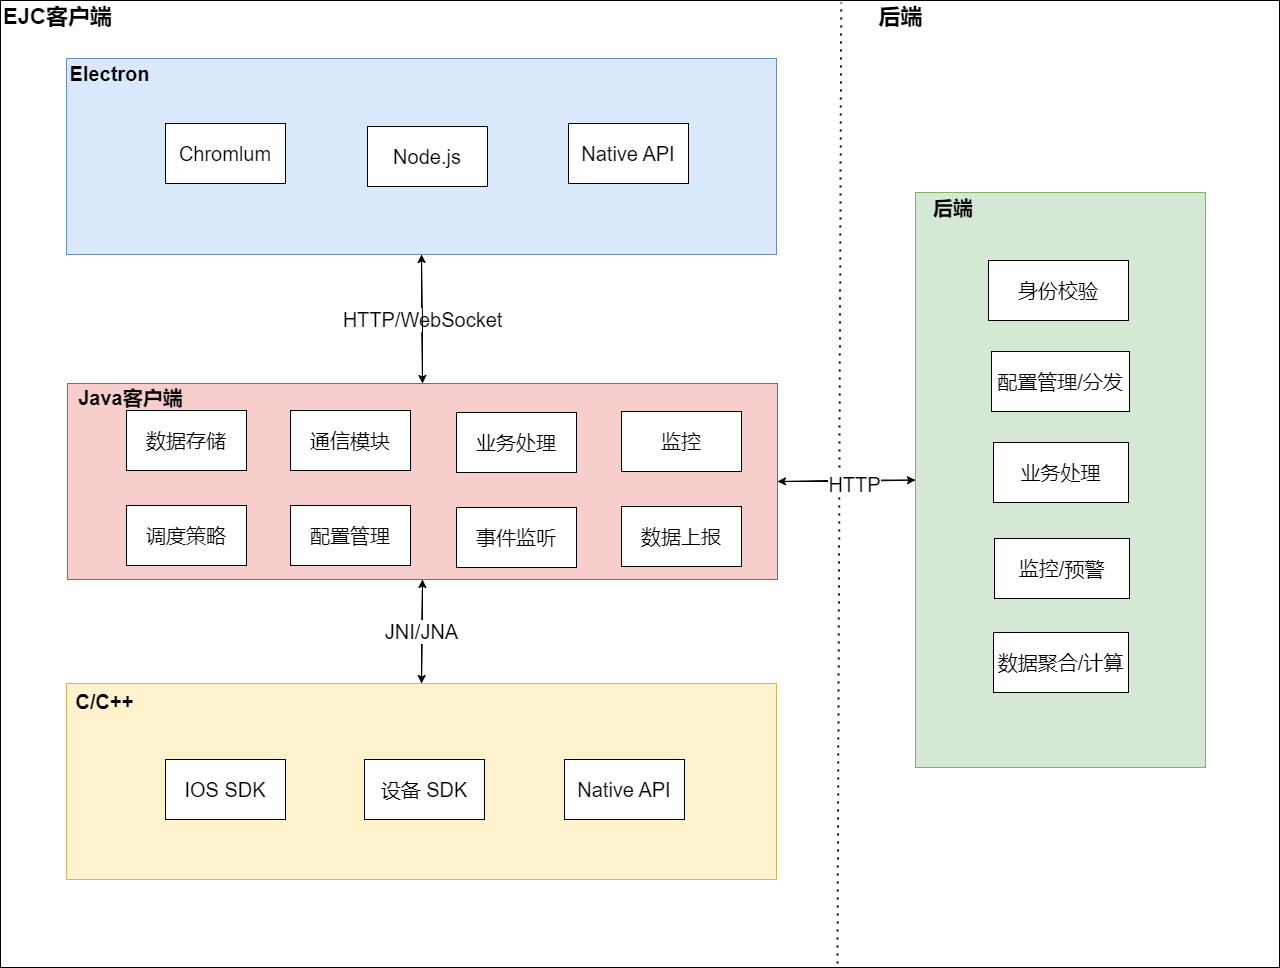 EJC architecture diagram